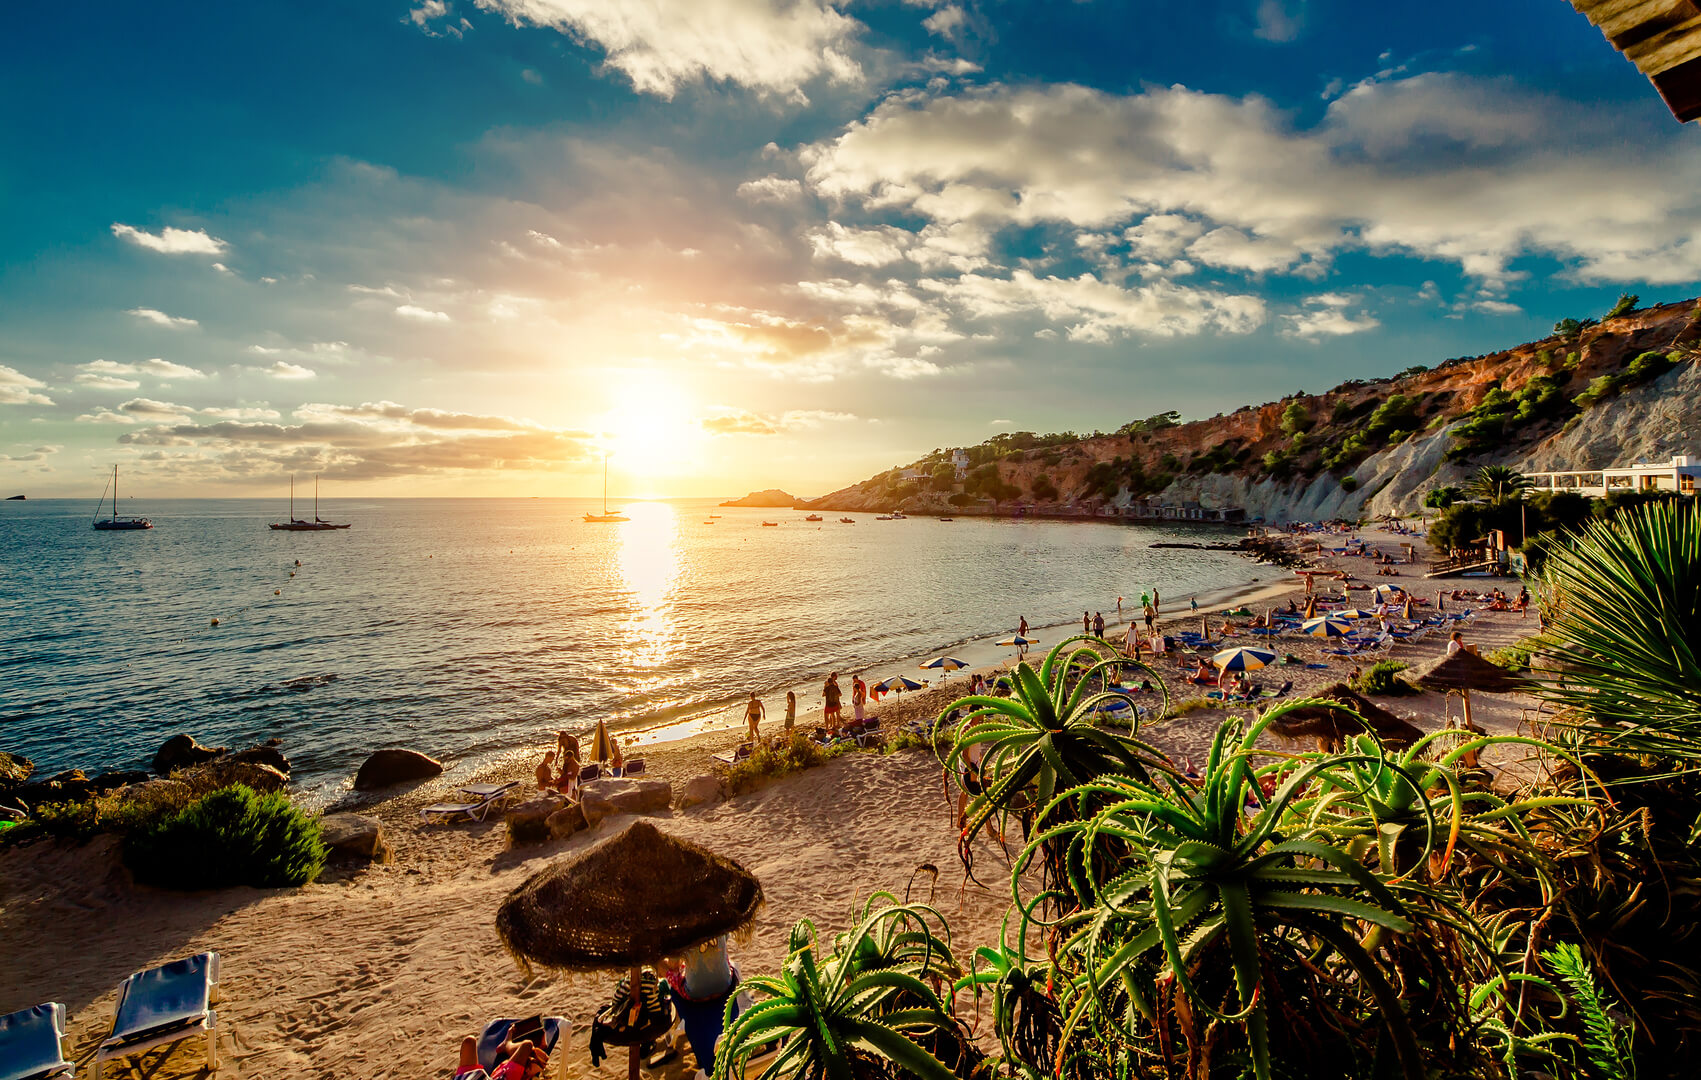 Plage de Cala d'Hort au coucher du soleil. Les gens se font bronzer, font la fête sur la plage rocheuse pittoresque tropicale de sable pendant le coucher du soleil. Cette plage est très appréciée des clubbers et des vacanciers des Baléares. Ibiza